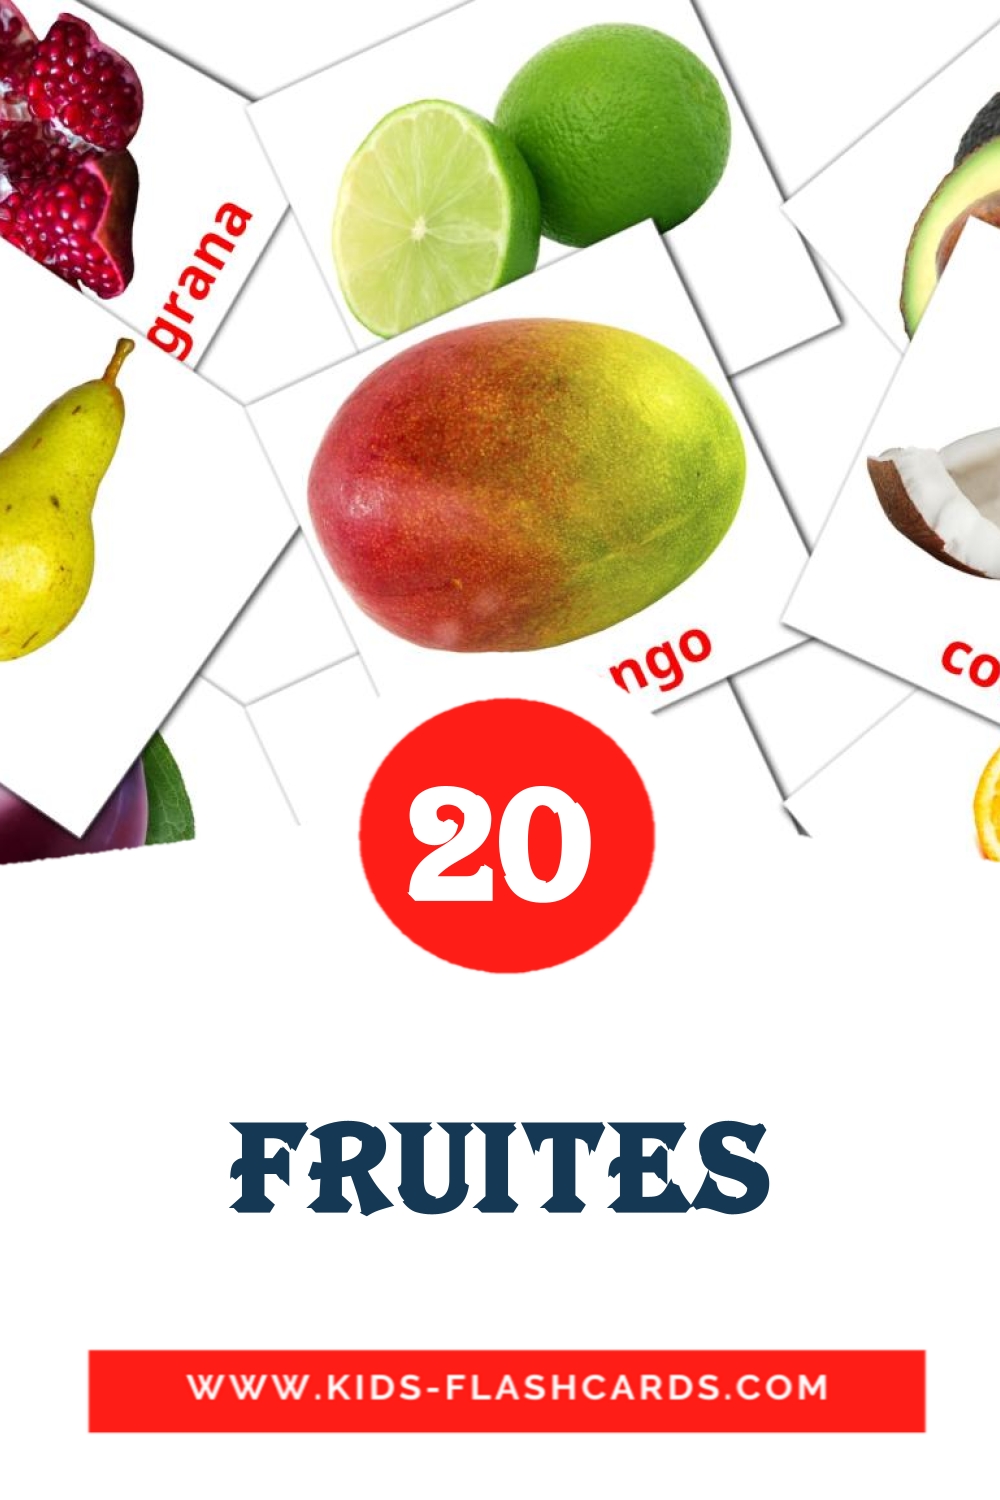 Fruites на каталонском для Детского Сада (20 карточек)